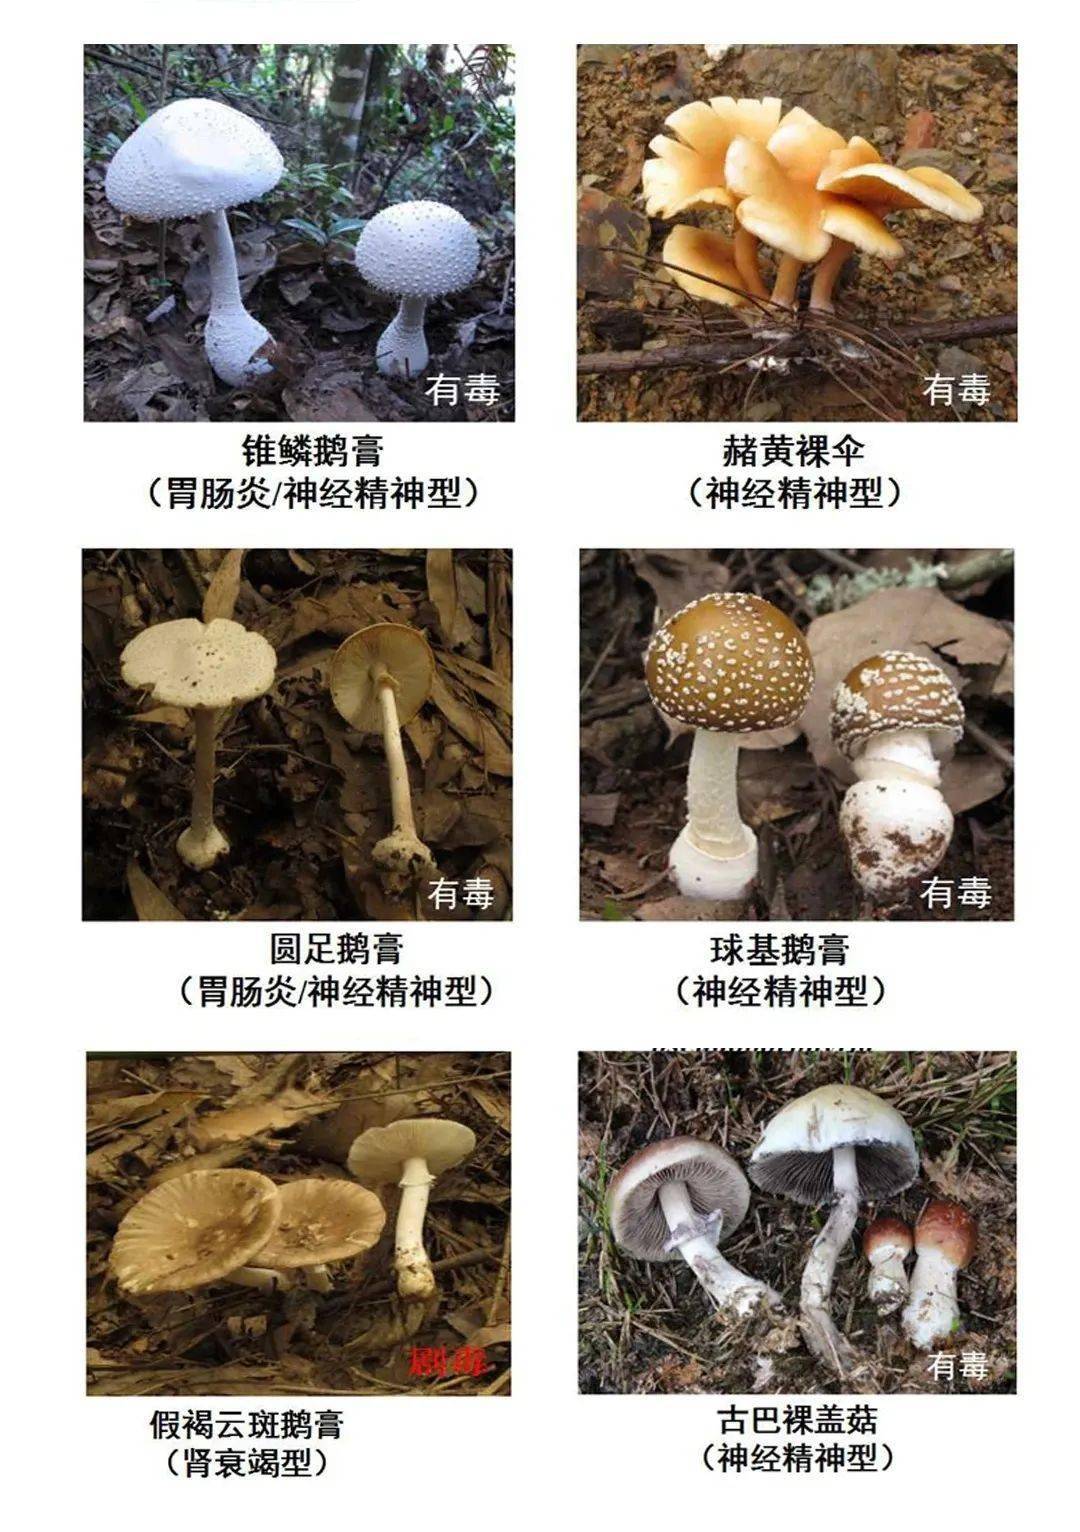 十大毒菇图片